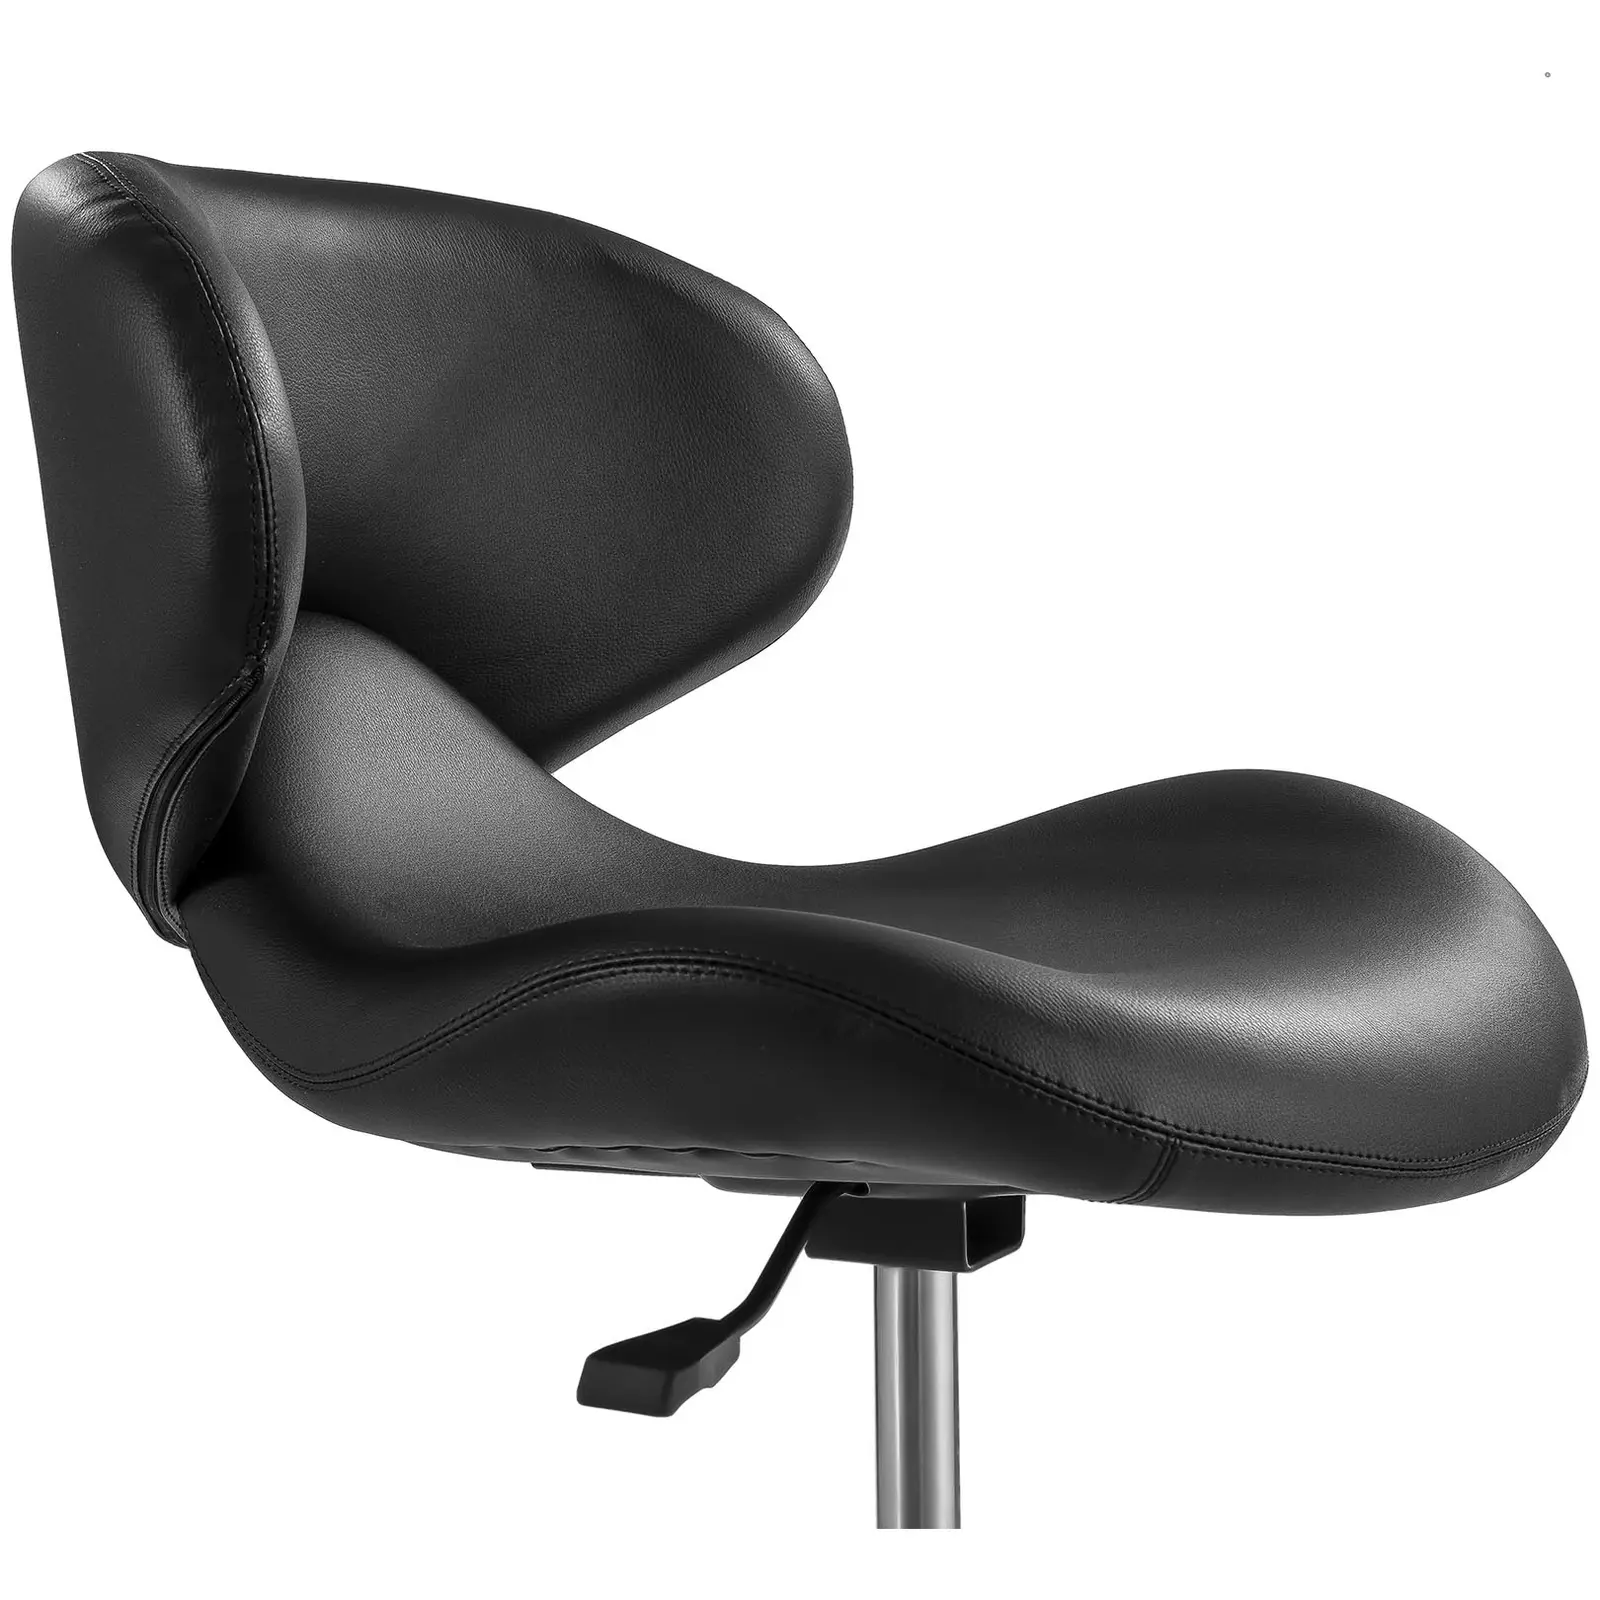 Fodrász szék - 440–570 mm - 150 kg - Black